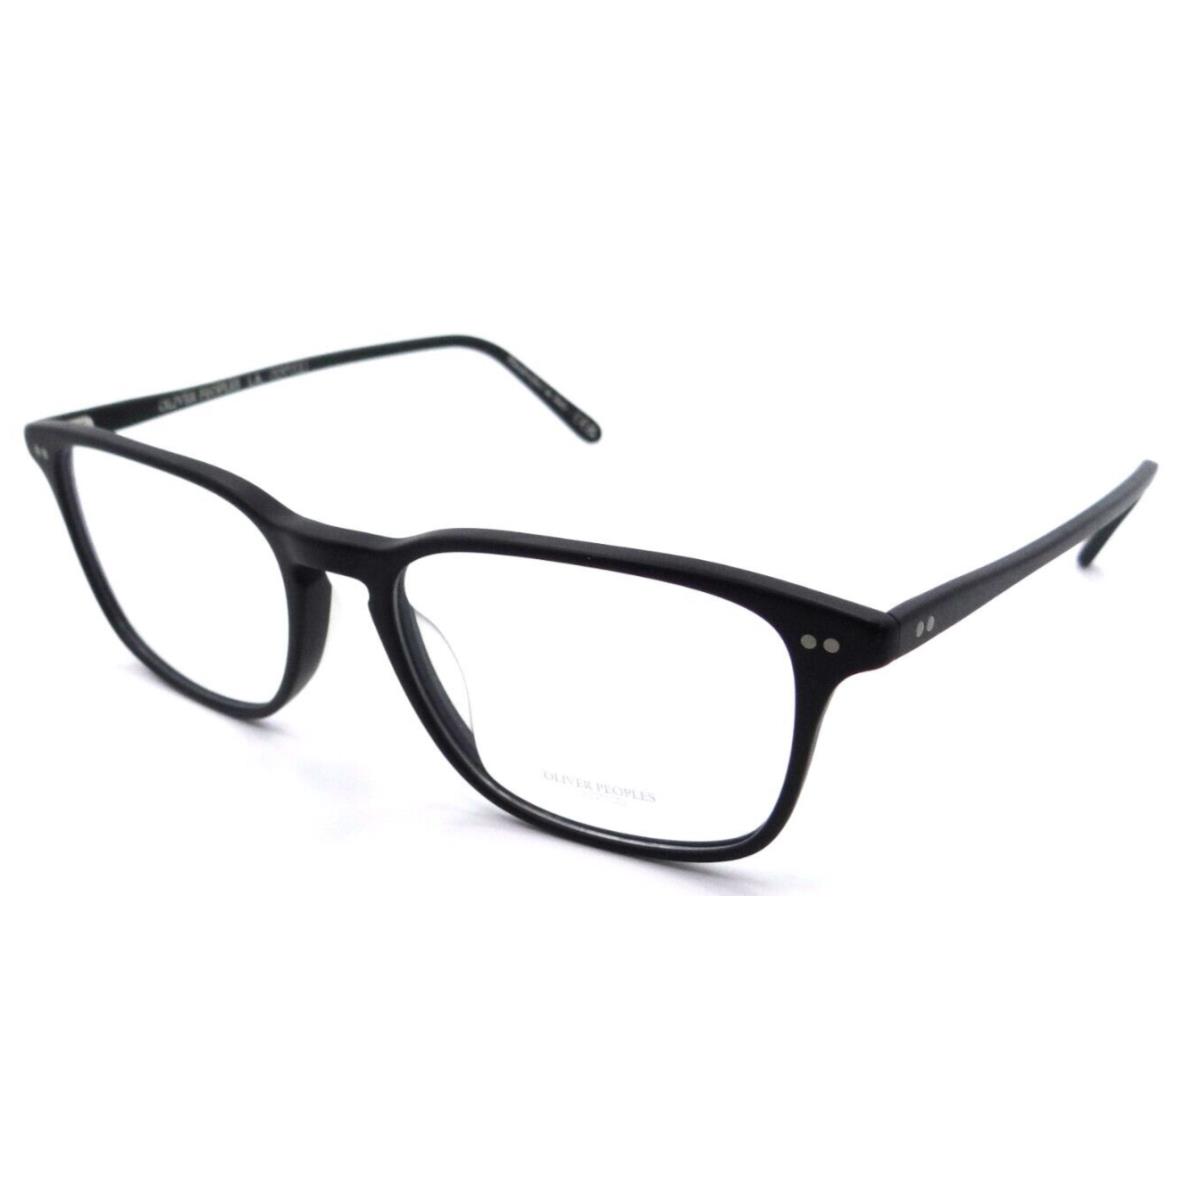 Oliver Peoples Eyeglasses Frames OV 5427U 1465 55-18-150 Berrington Matte Black - Multicolor Frame